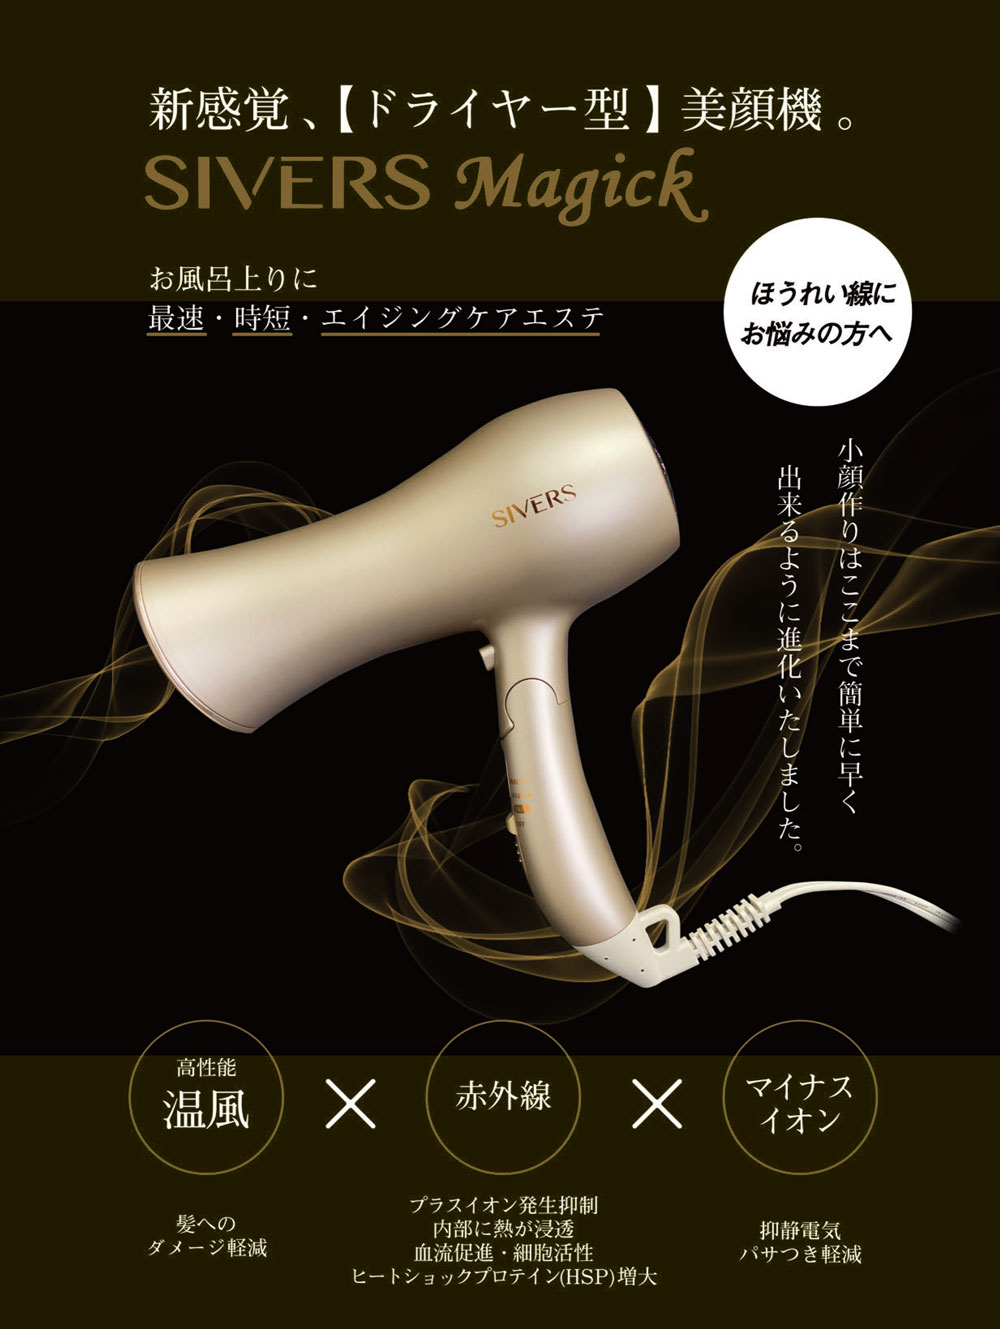 AV100V5060HzSIVERS Magick(シバーズマジック)